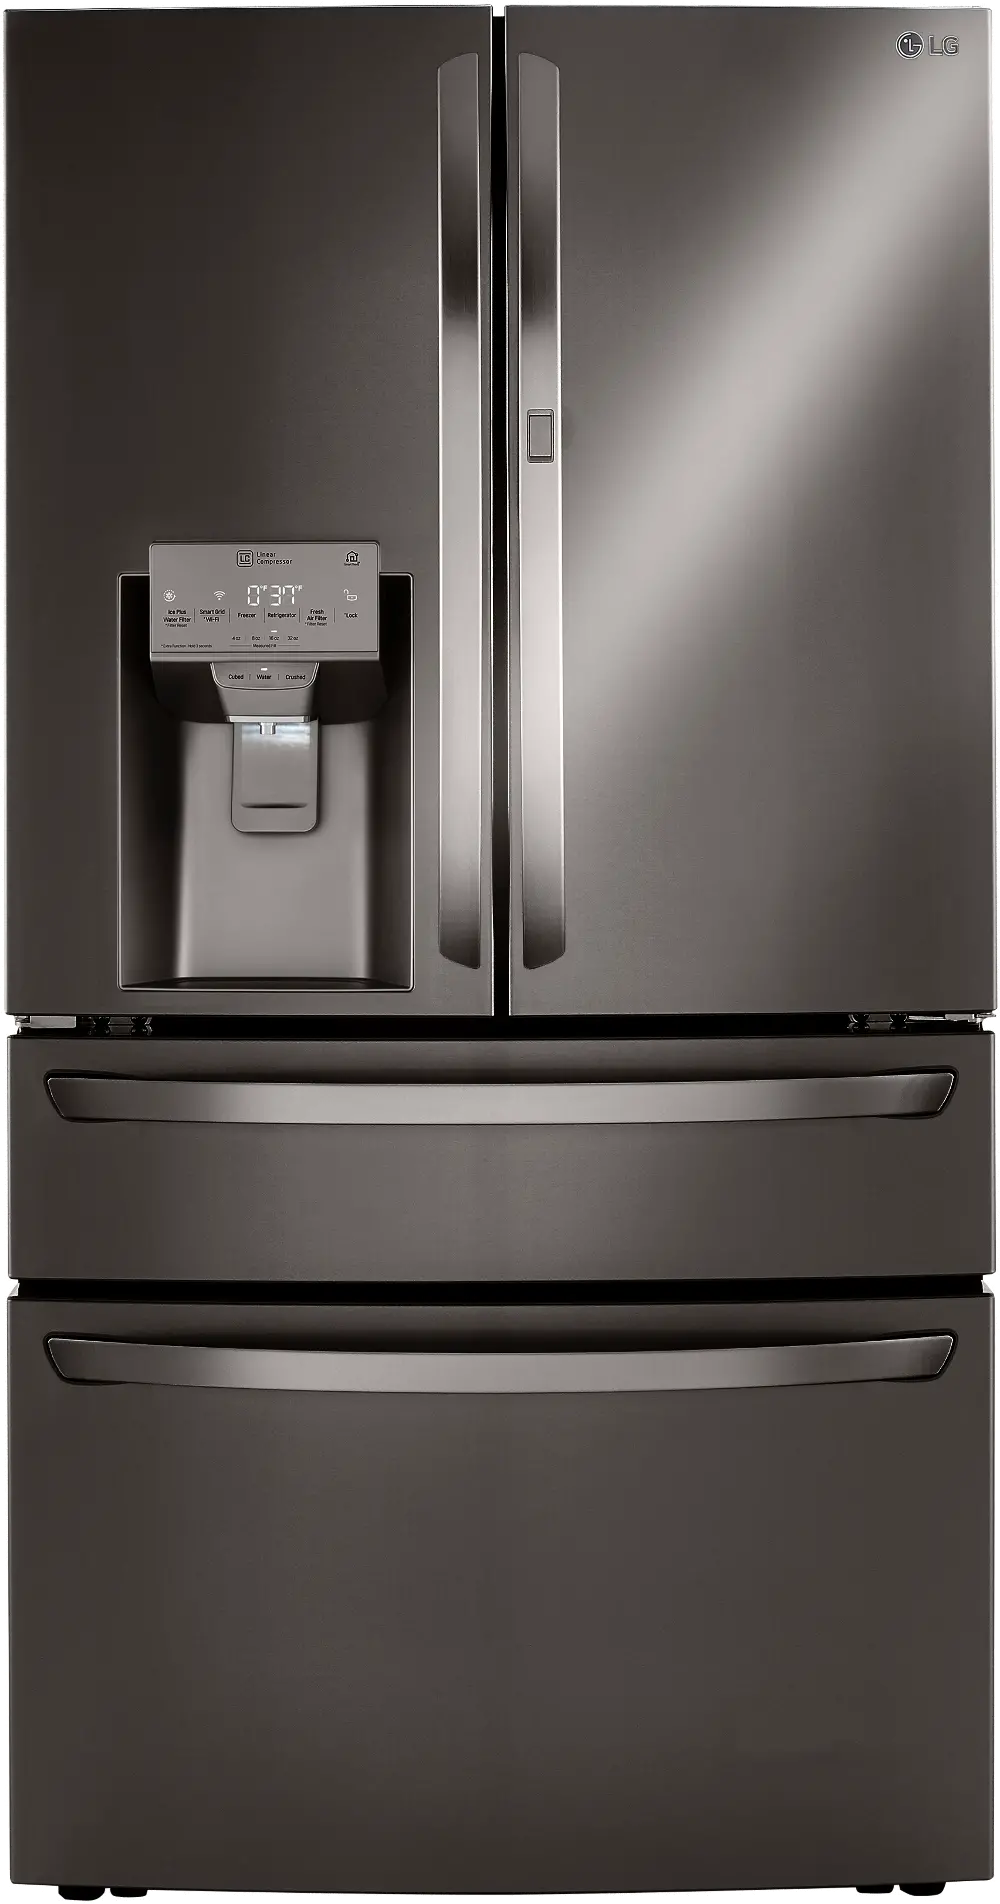 LRMDS3006D LG 29.5 cu ft French Door in Door Refrigerator - Black Stainless Steel-1